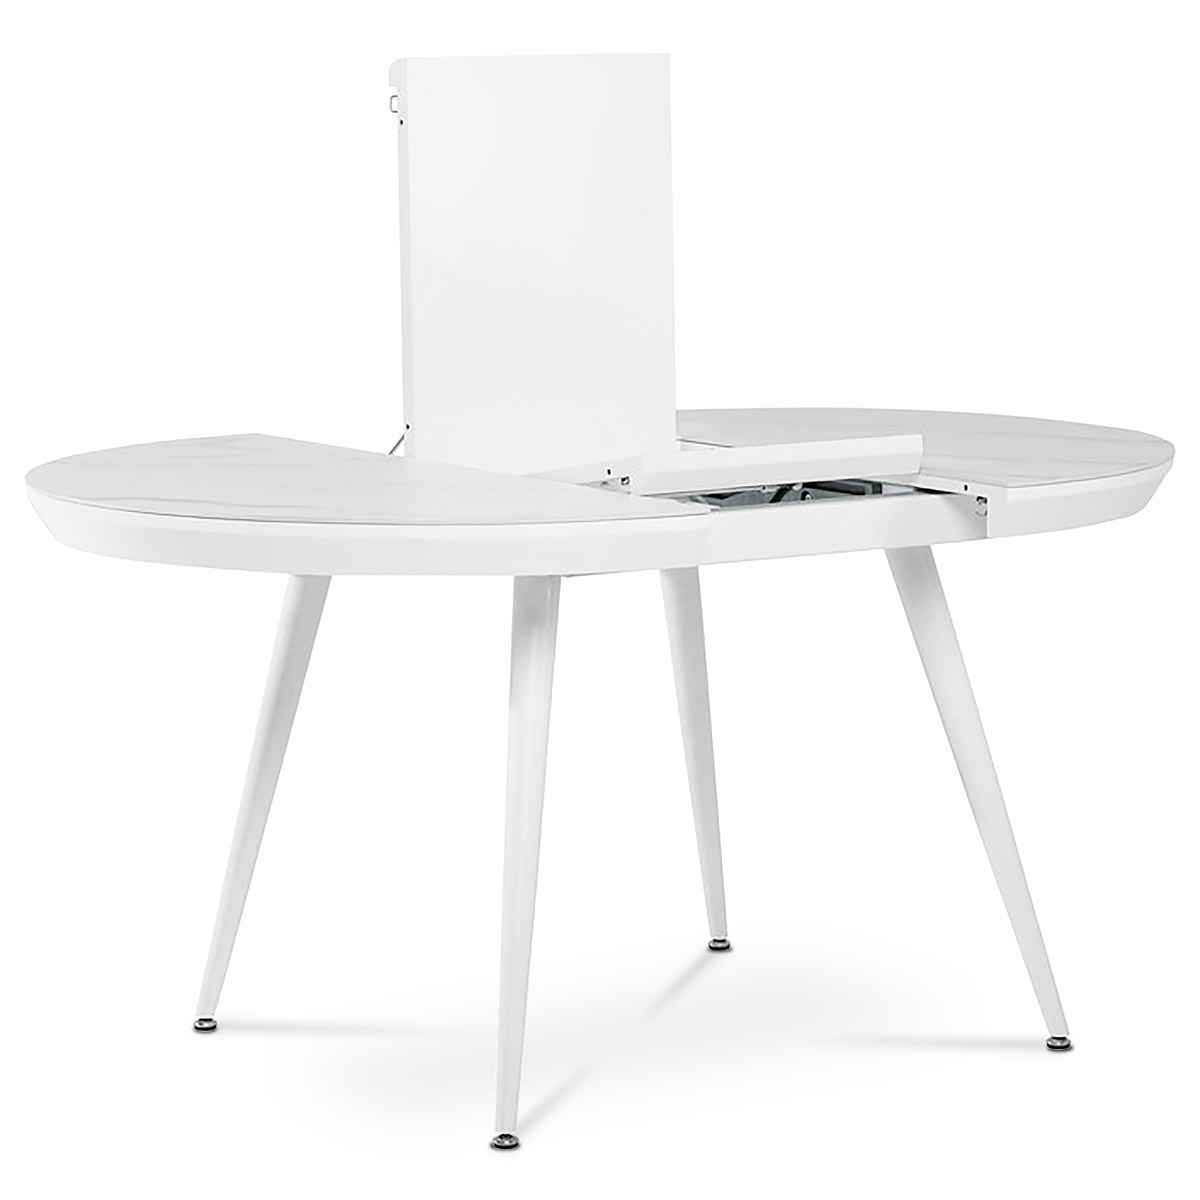 Jedálenský stôl 110+40x110 cm, keramická doska s dekorom biely mramor, MDF, kovové nohy, bílý matný lak